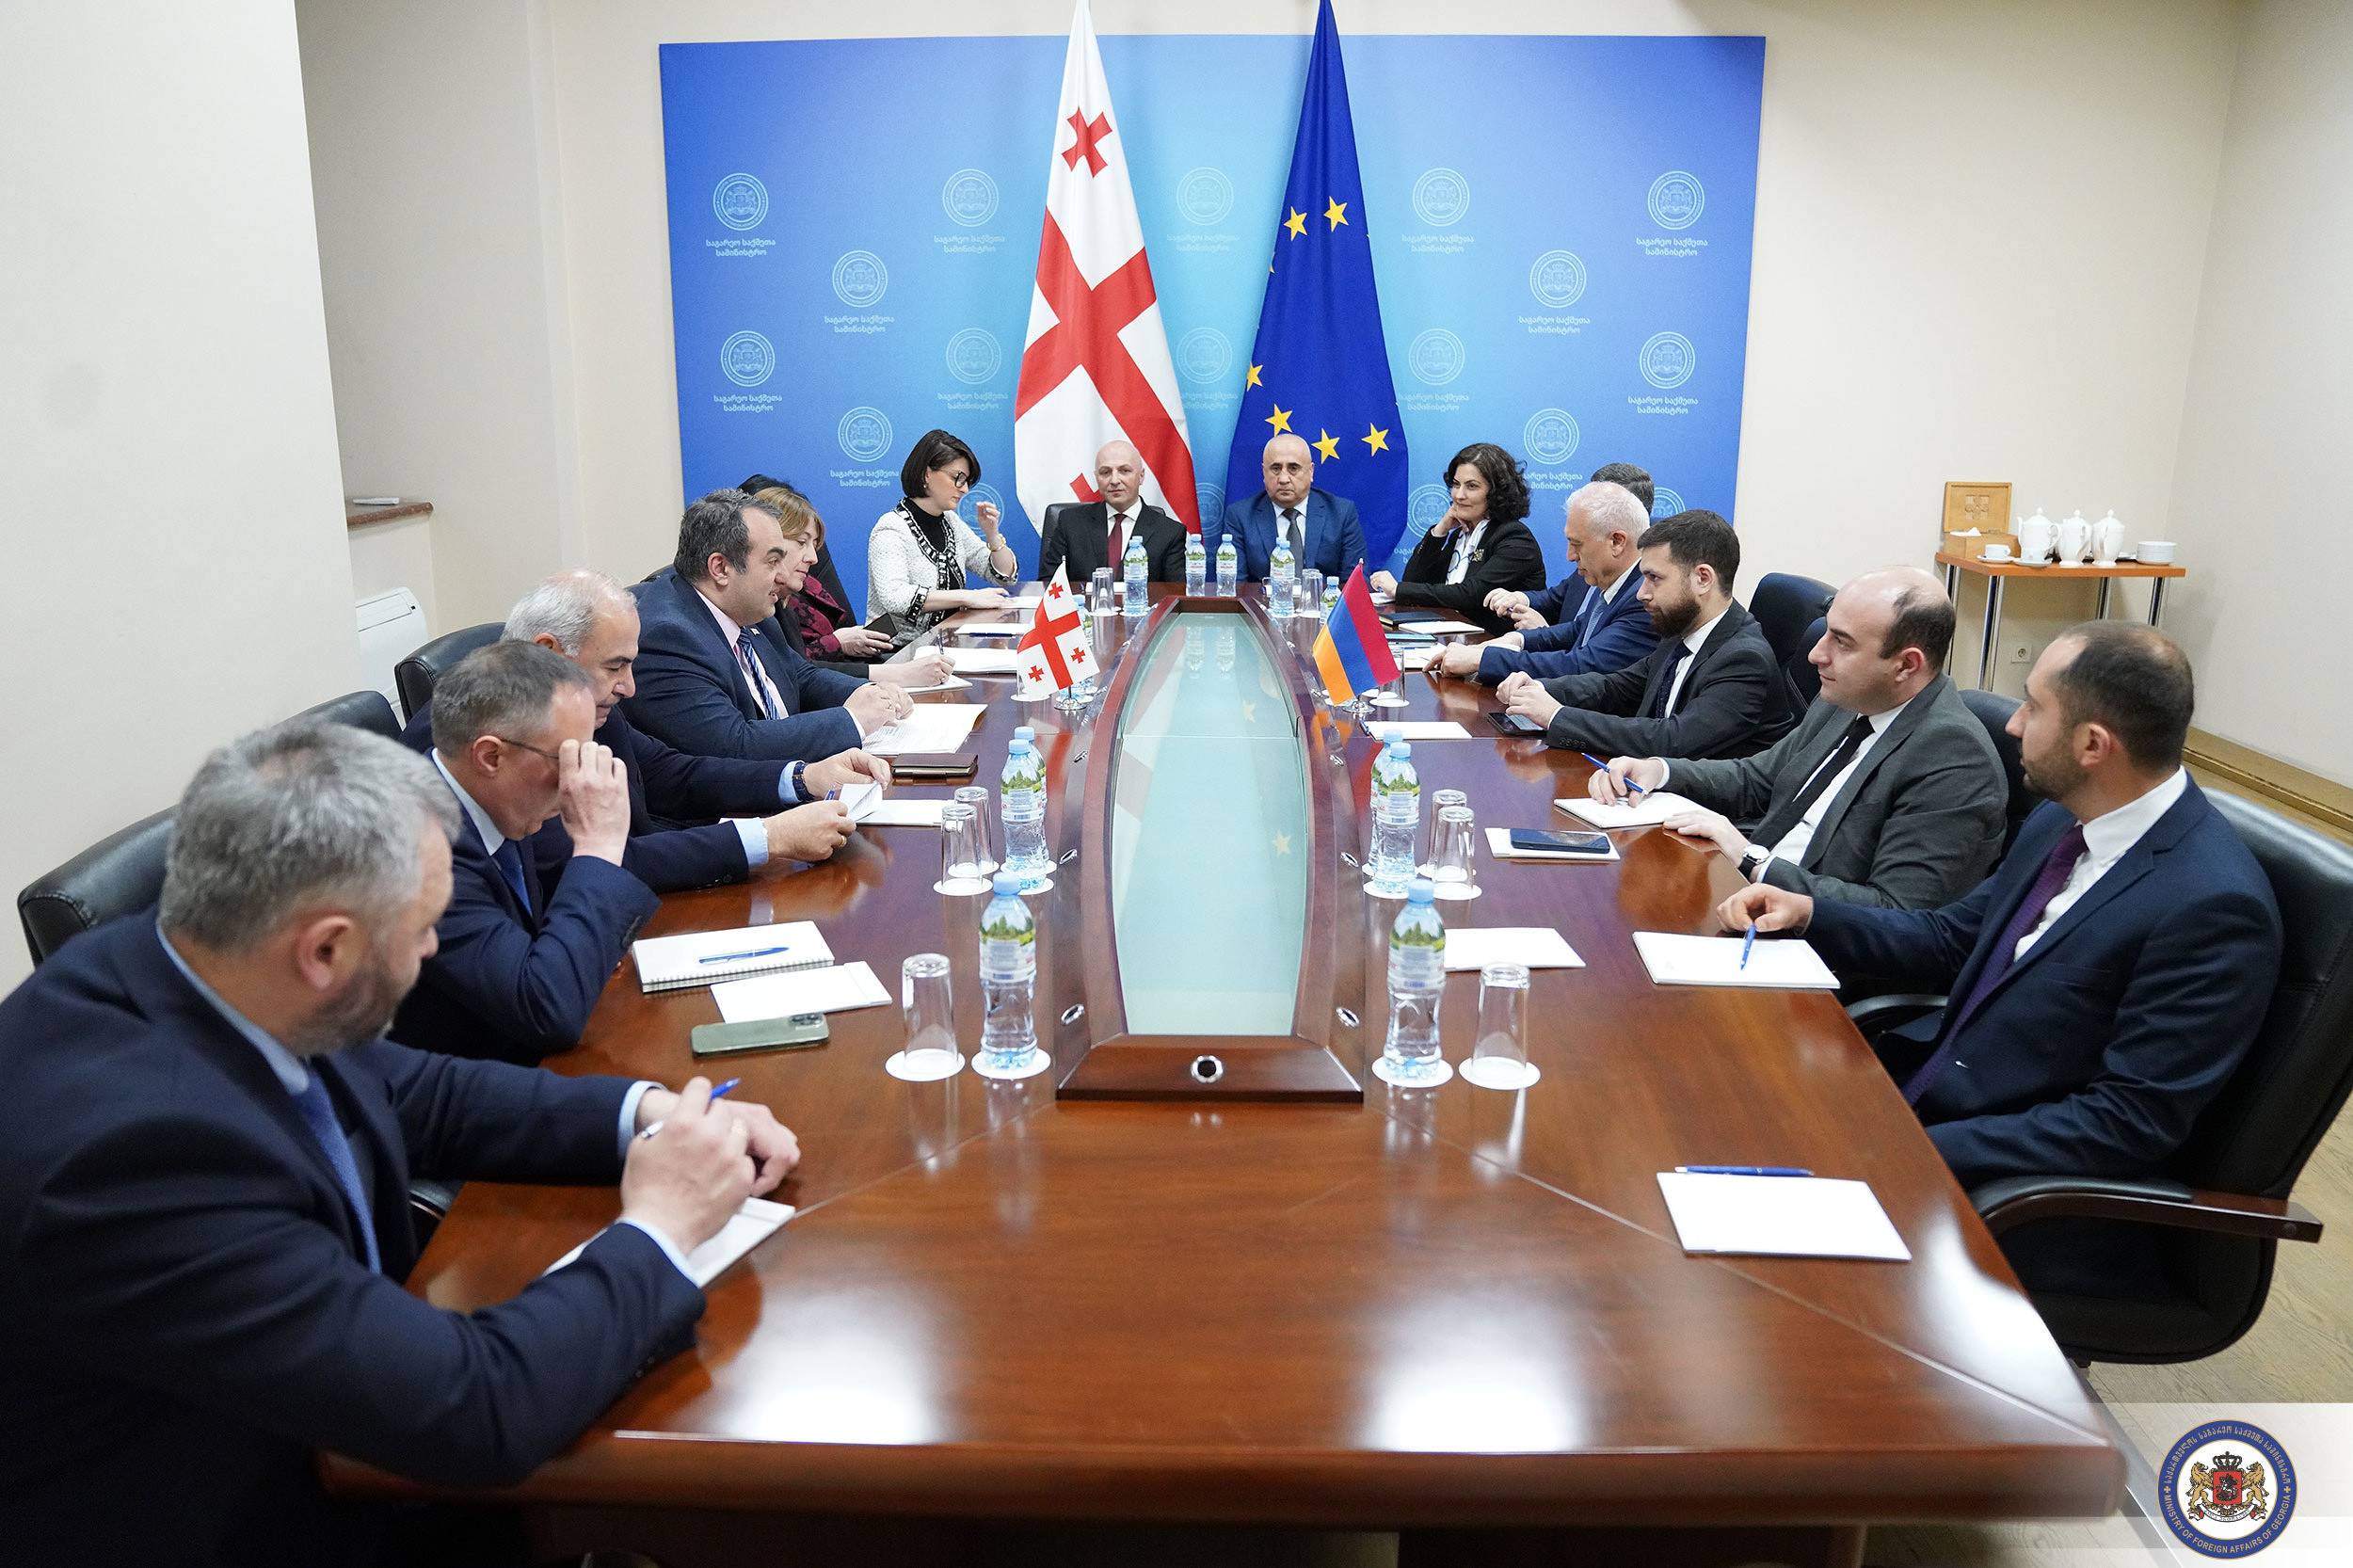 Տեղի է ունեցել ՀՀ և Վրաստանի միջև քաղաքական խորհրդակցությունների հերթական հանդիպումը